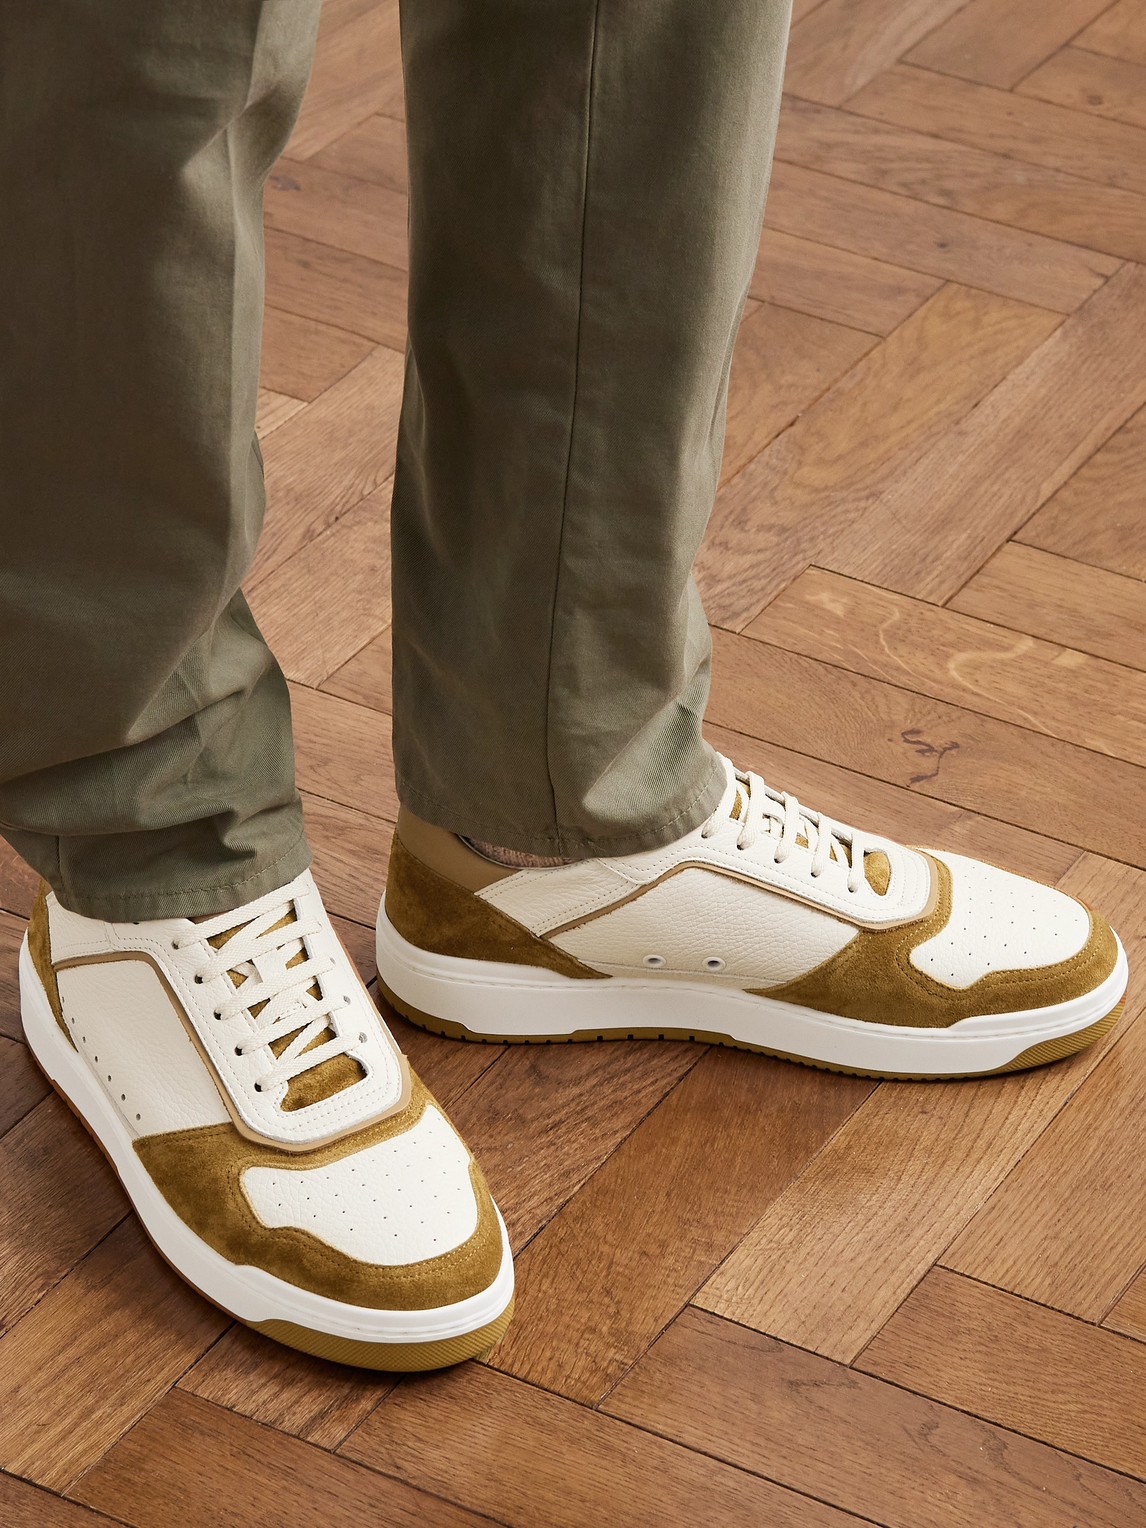 Louis Vuitton Run Away Sneaker On Feet 